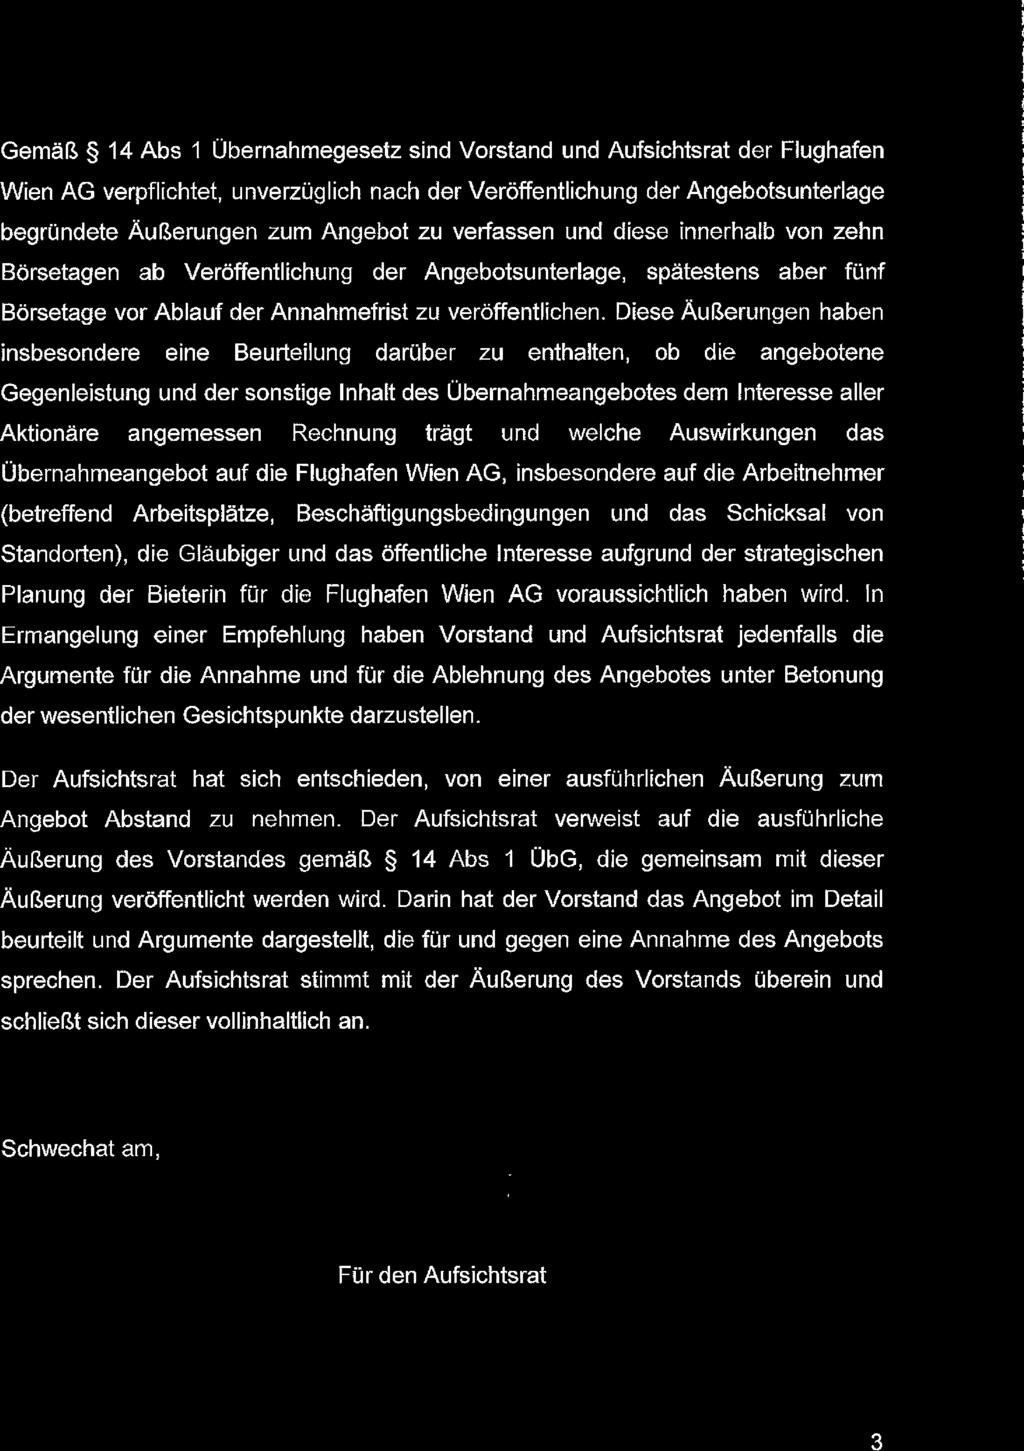 Gemäß 14 Abs 1 Übernahmegesetz sind Vorstand und Aufsichtsrat der Flughafen Wien AG verpflichtet, unverzüglich nach der Veröffentlichung der Angebotsunterlage begründete Äußerungen zum Angebot zu